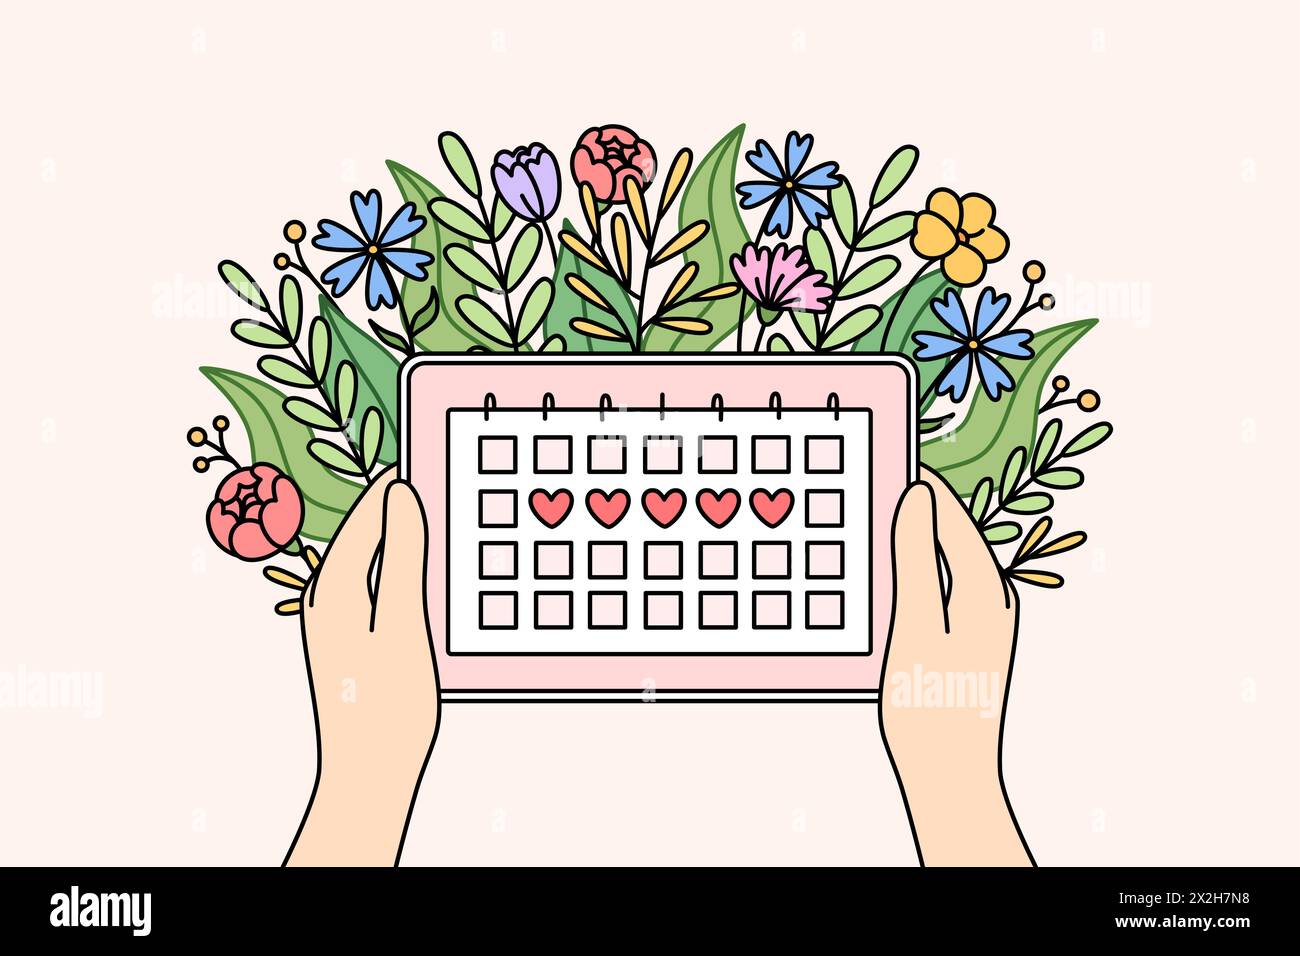 Menstruationskalender in Händen von Frauen und Blumen, zur Gestaltung von gynäkologischen Produkten für Mädchen oder zur Berechnung von PMS. Frauengesundheitskonzept und Tracking von Menstruations- oder PMS-Tagen Stock Vektor